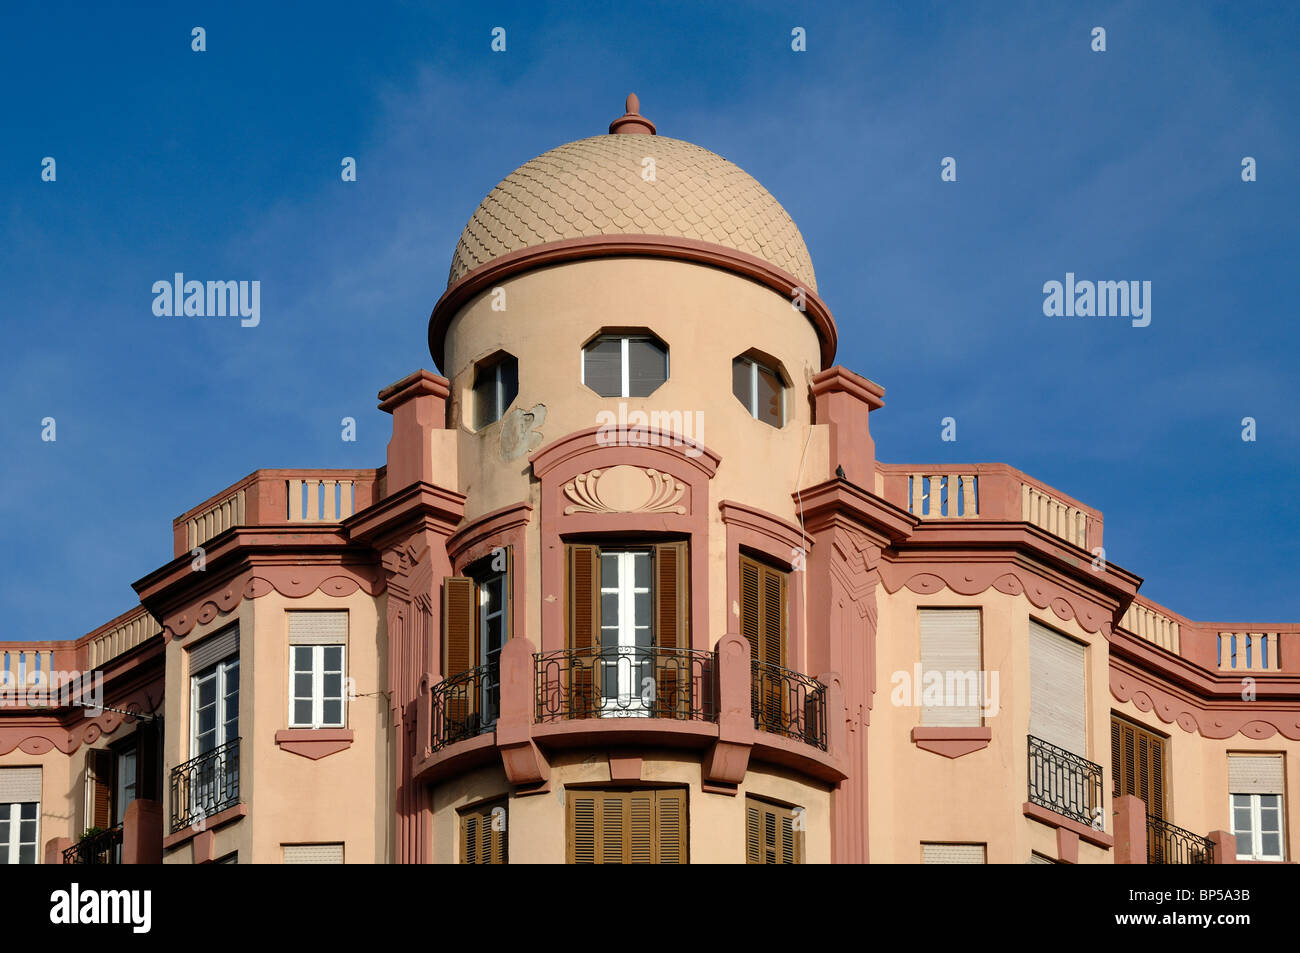 Corner Block, Turret & Dome of Art Nouveau Apartment Building by Architect Enrique Nieto, Melilla, Spain Stock Photo